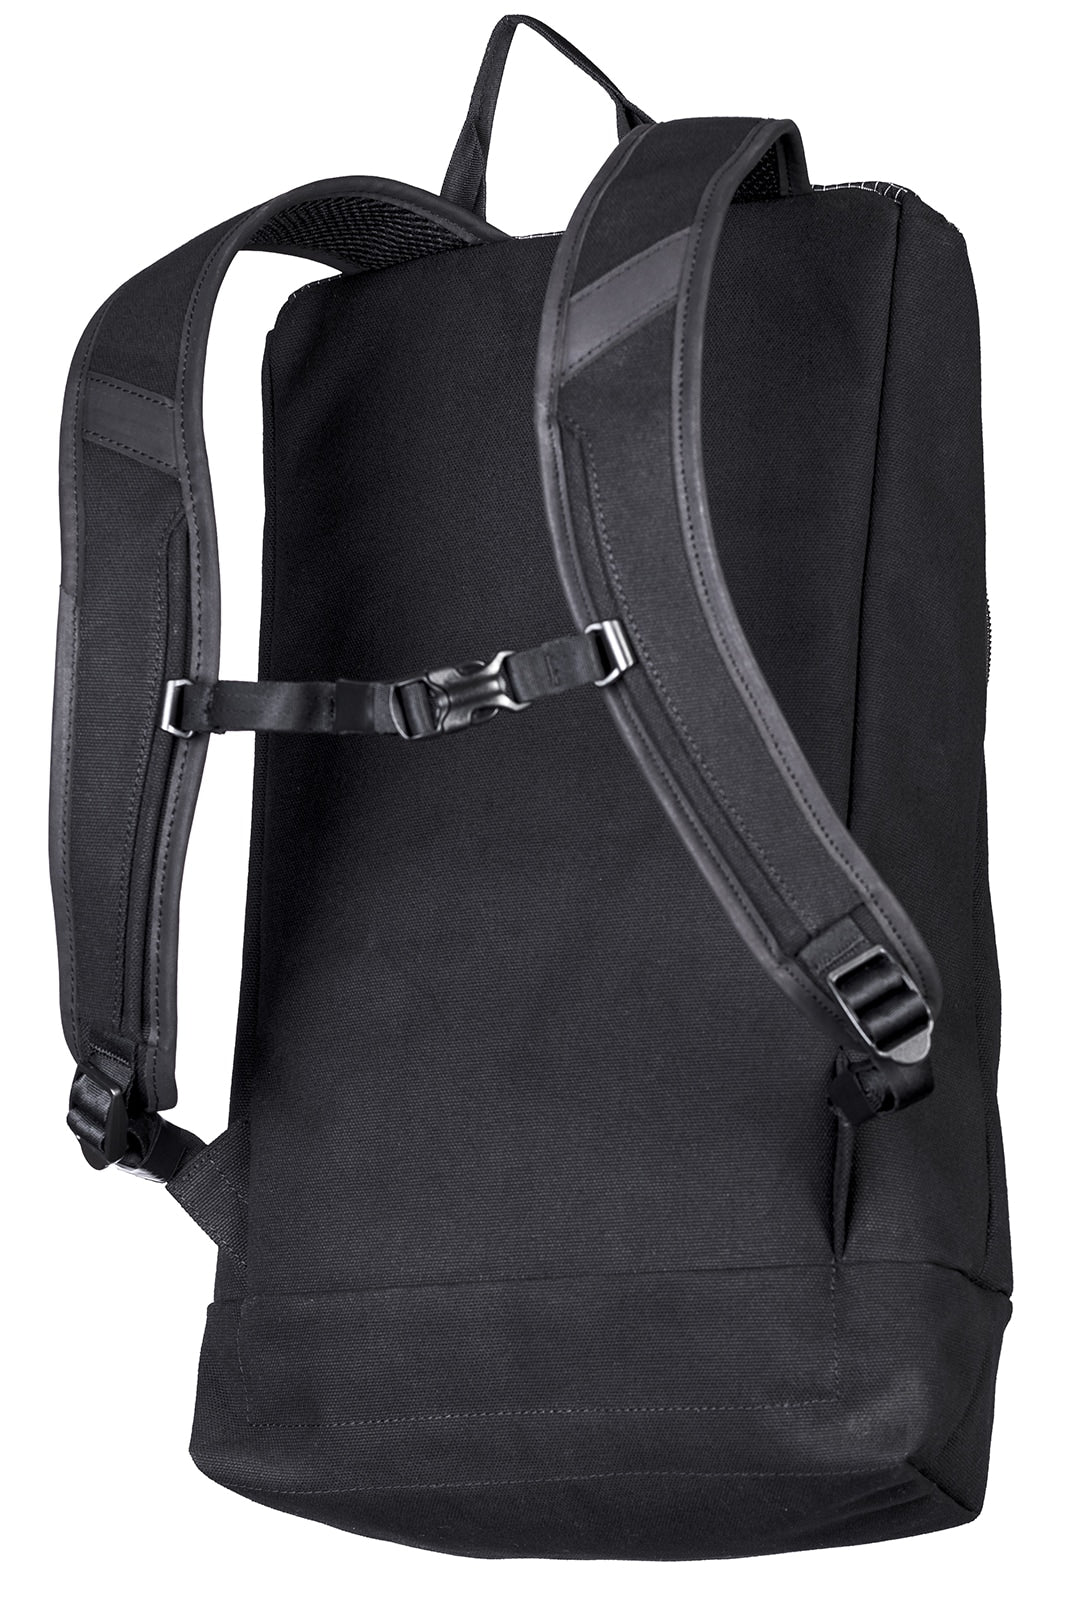 backpacks for laptop